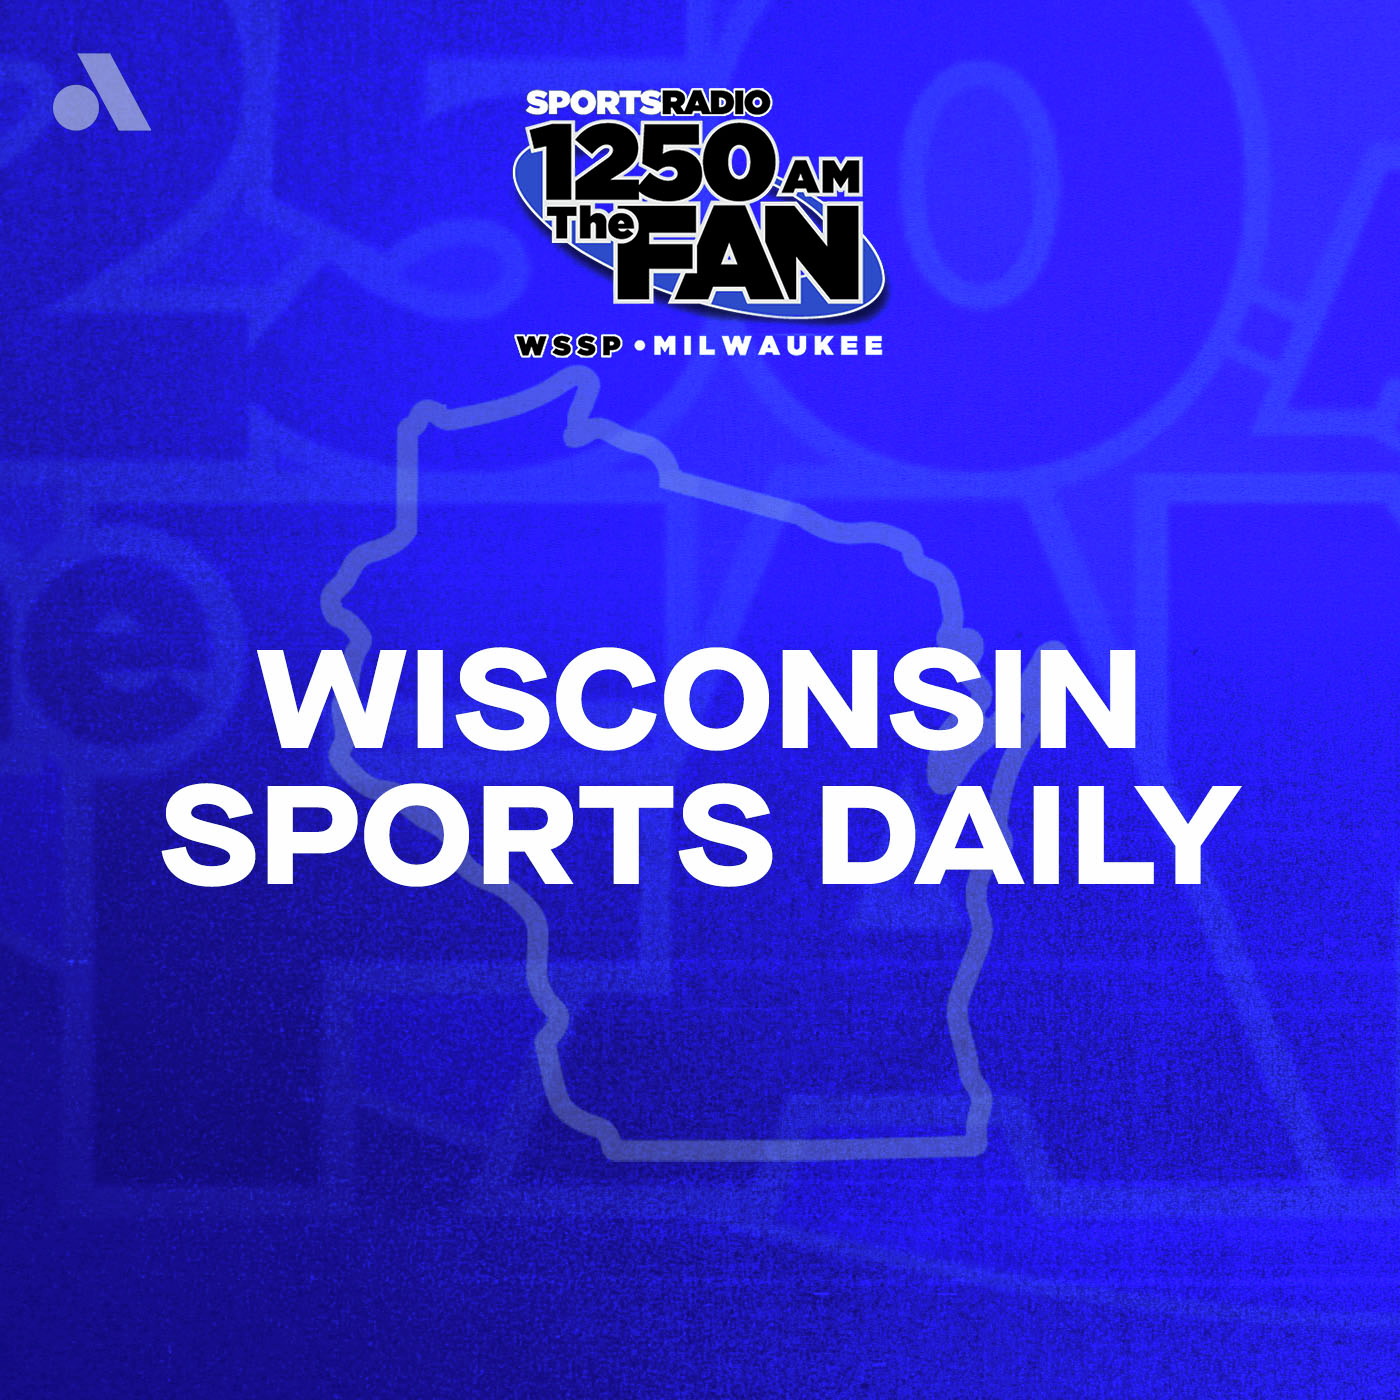 Thursday, June 20th: Dan Zielinski III Joins Wisconsin Sports Daily!